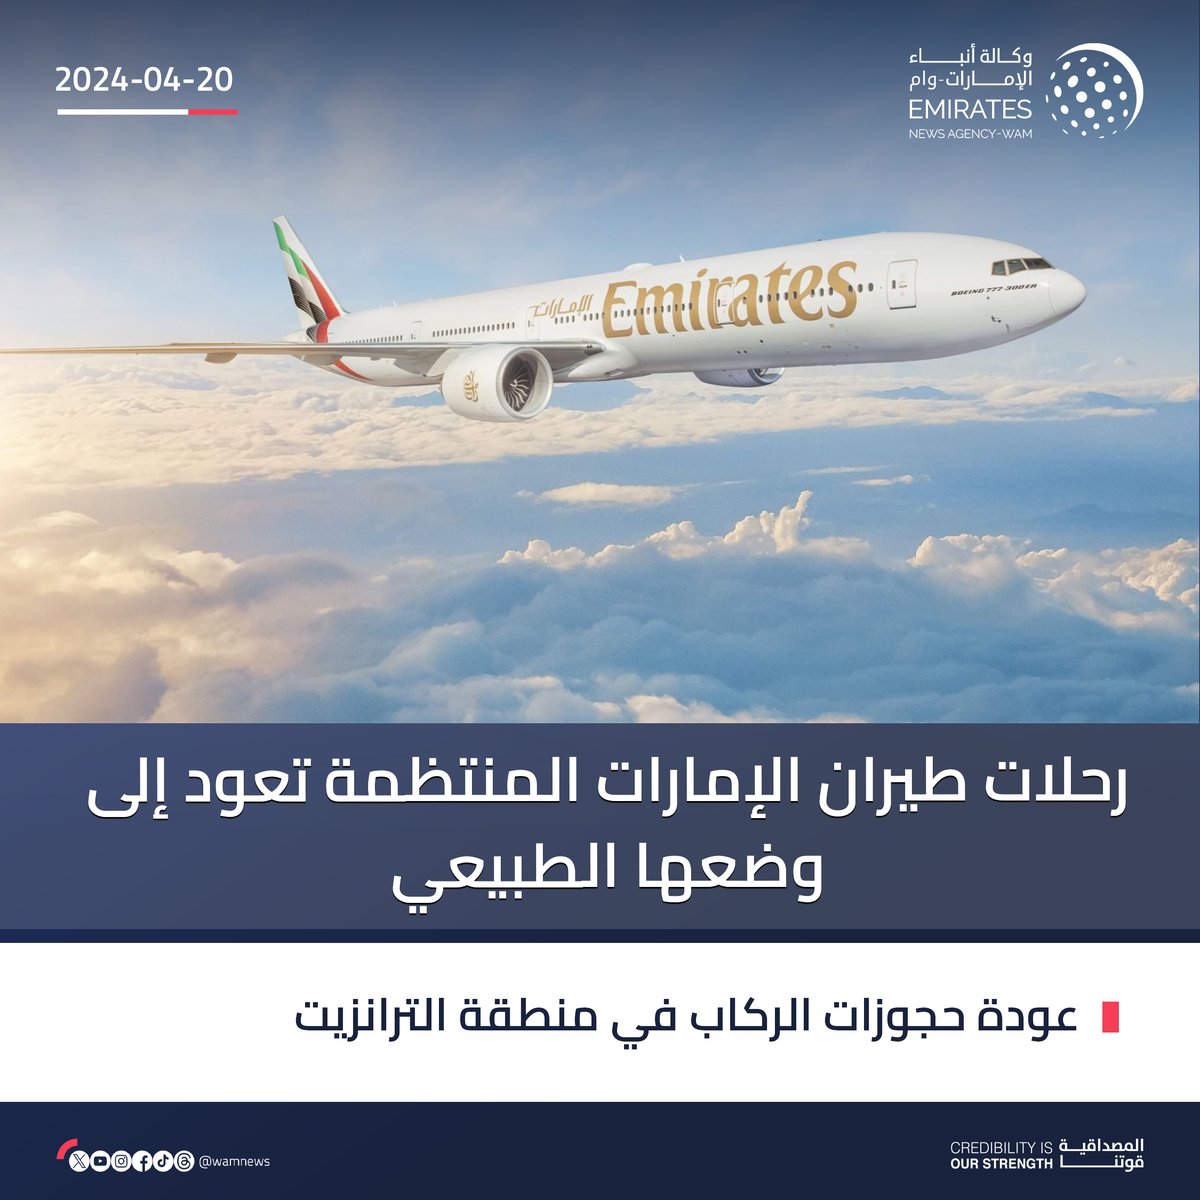 رحلات #طيران_الإمارات المنتظمة تعود إلى وضعها الطبيعي

#وام 
wam.ae/a/b2r2ne7